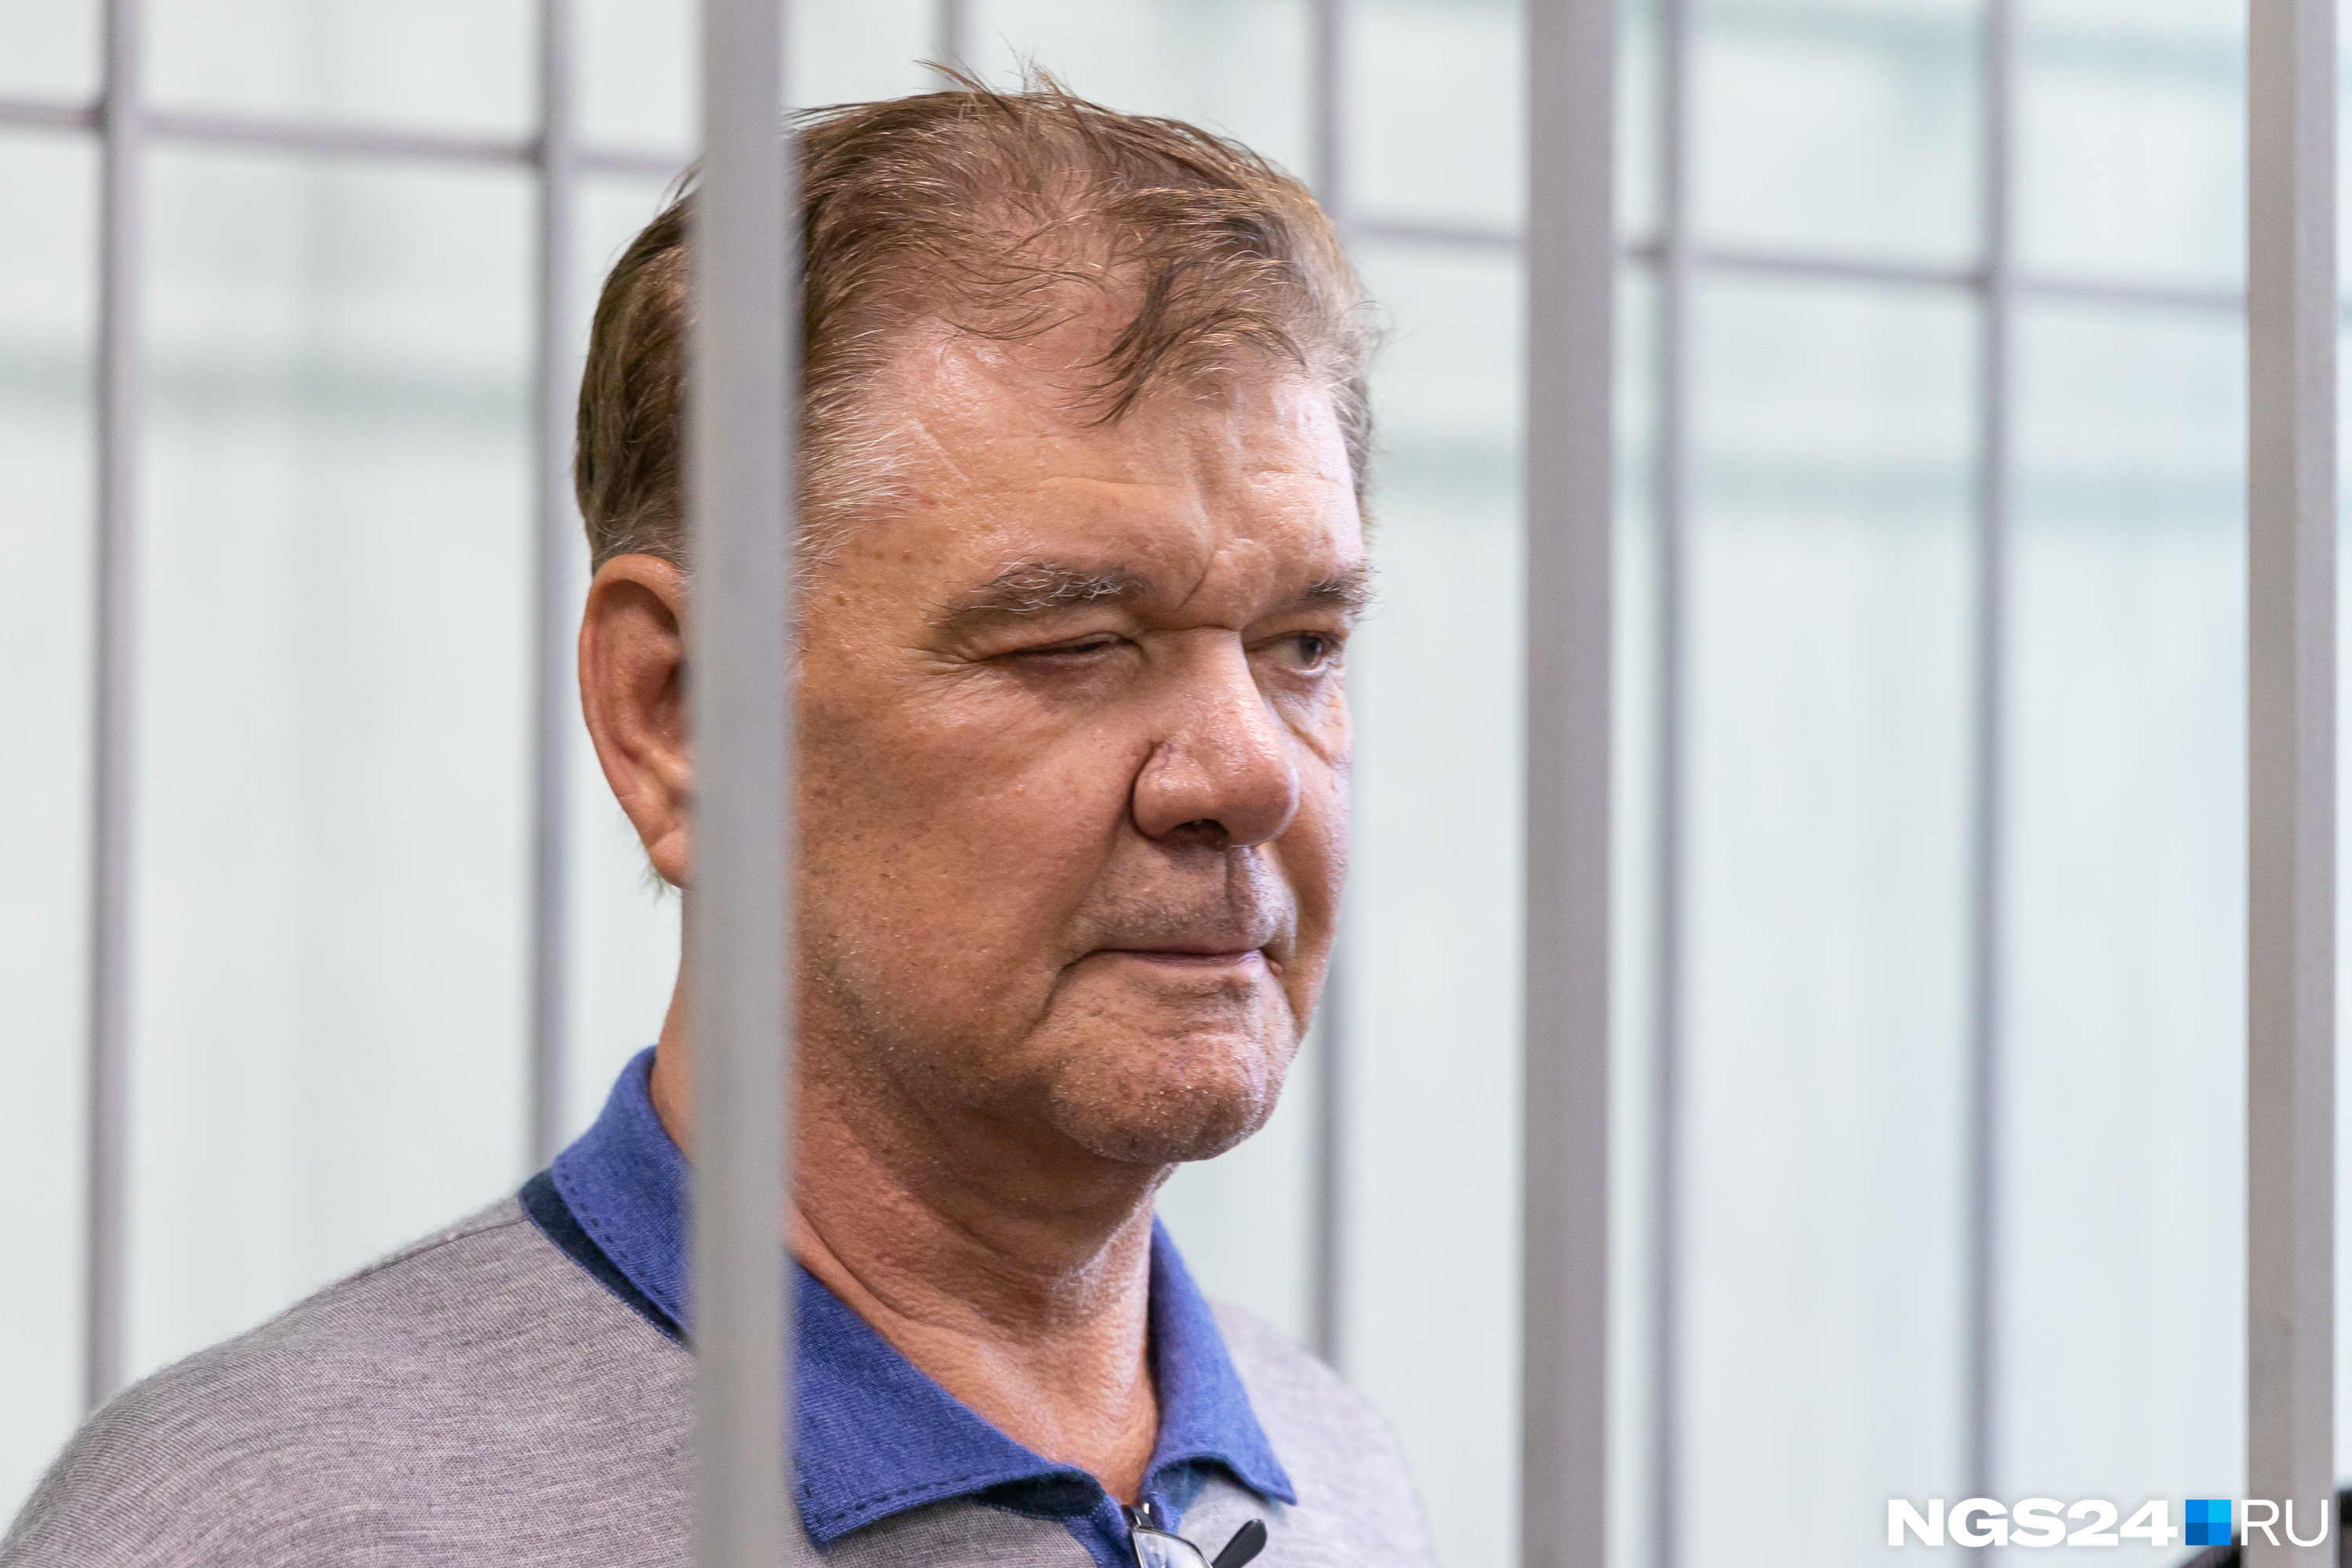 Владимир Егоров подмигнул кому-то в зале суда. Судя по направлению взгляда — своим родным